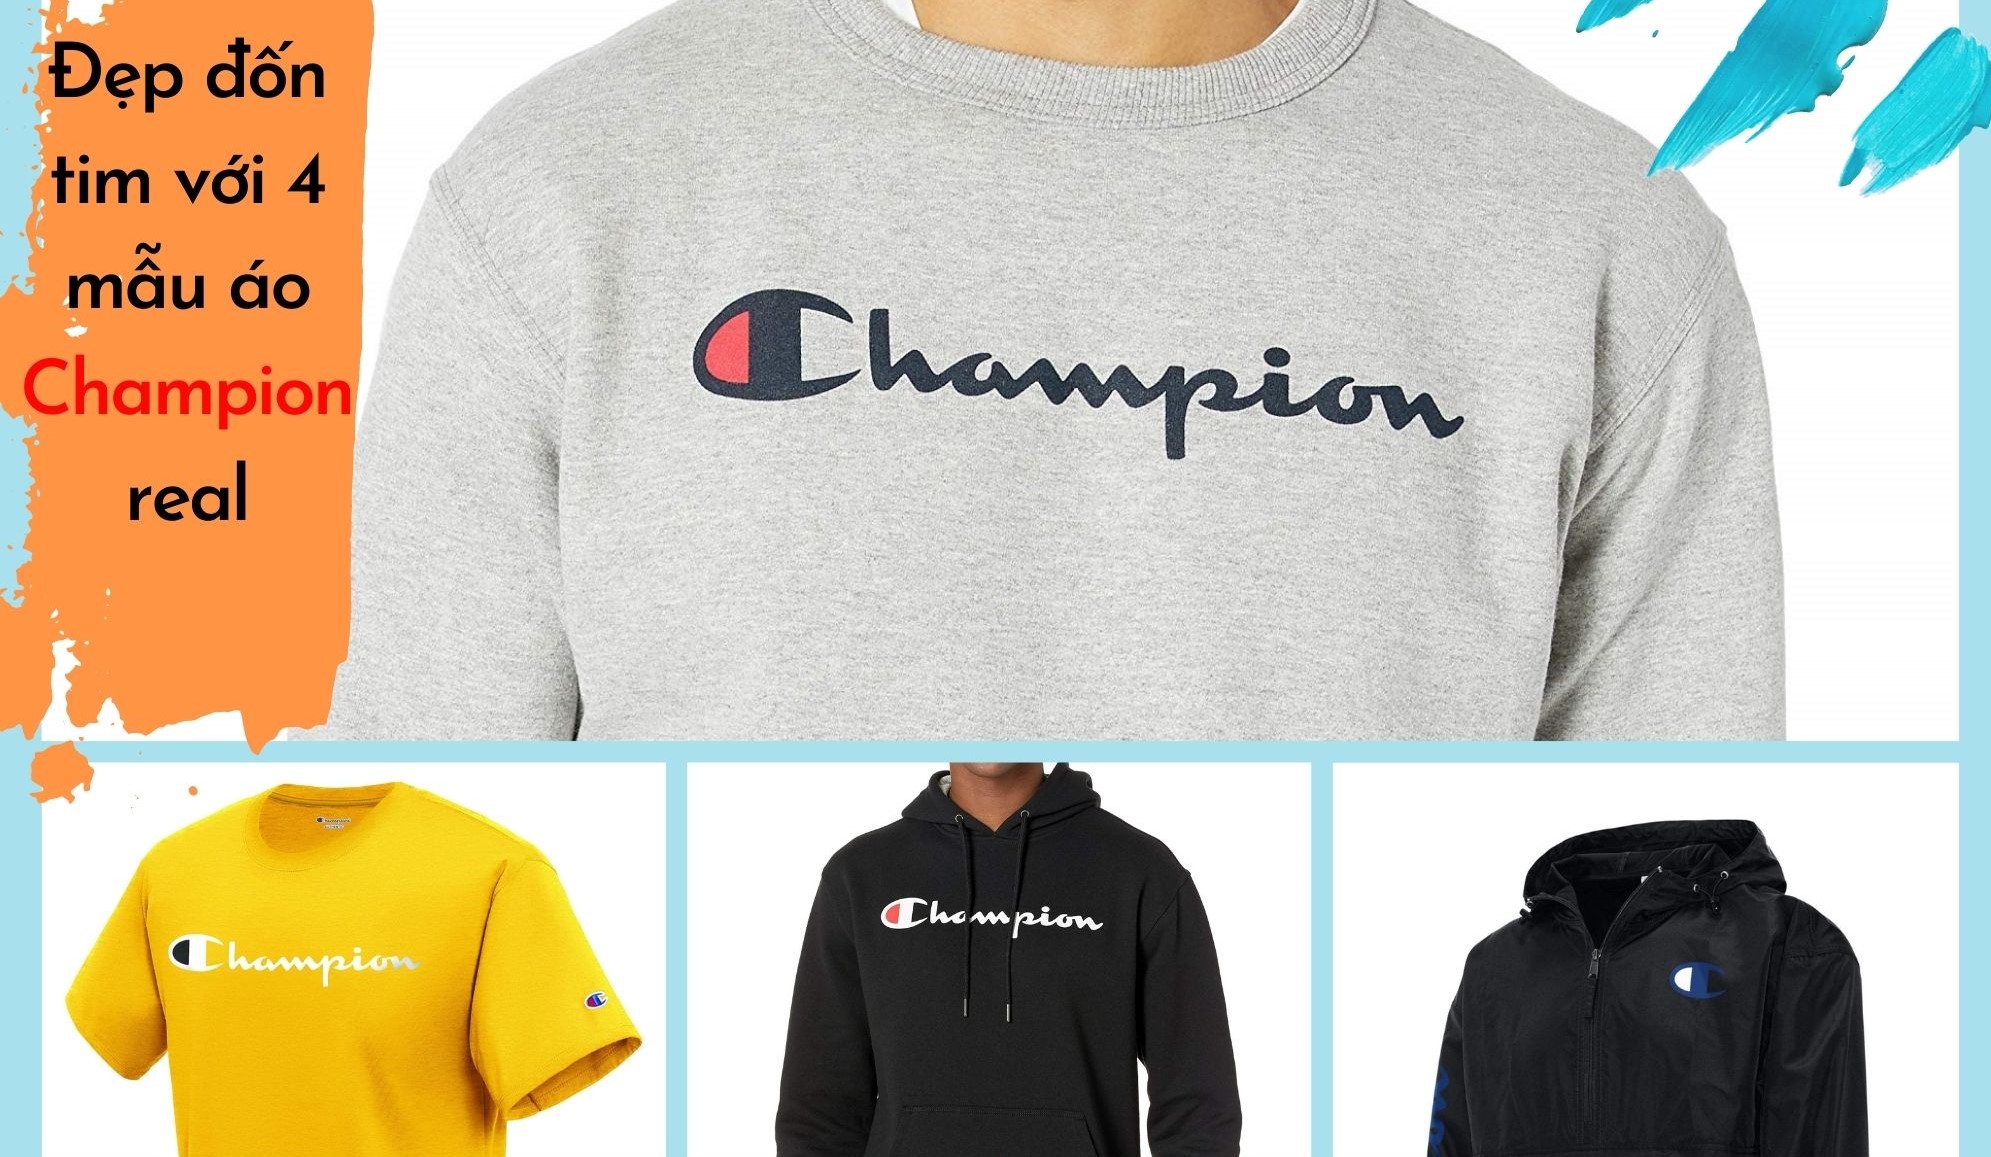 Đẹp đốn tim với 4 mẫu áo Champion real sốt xình xịch trên Amazon